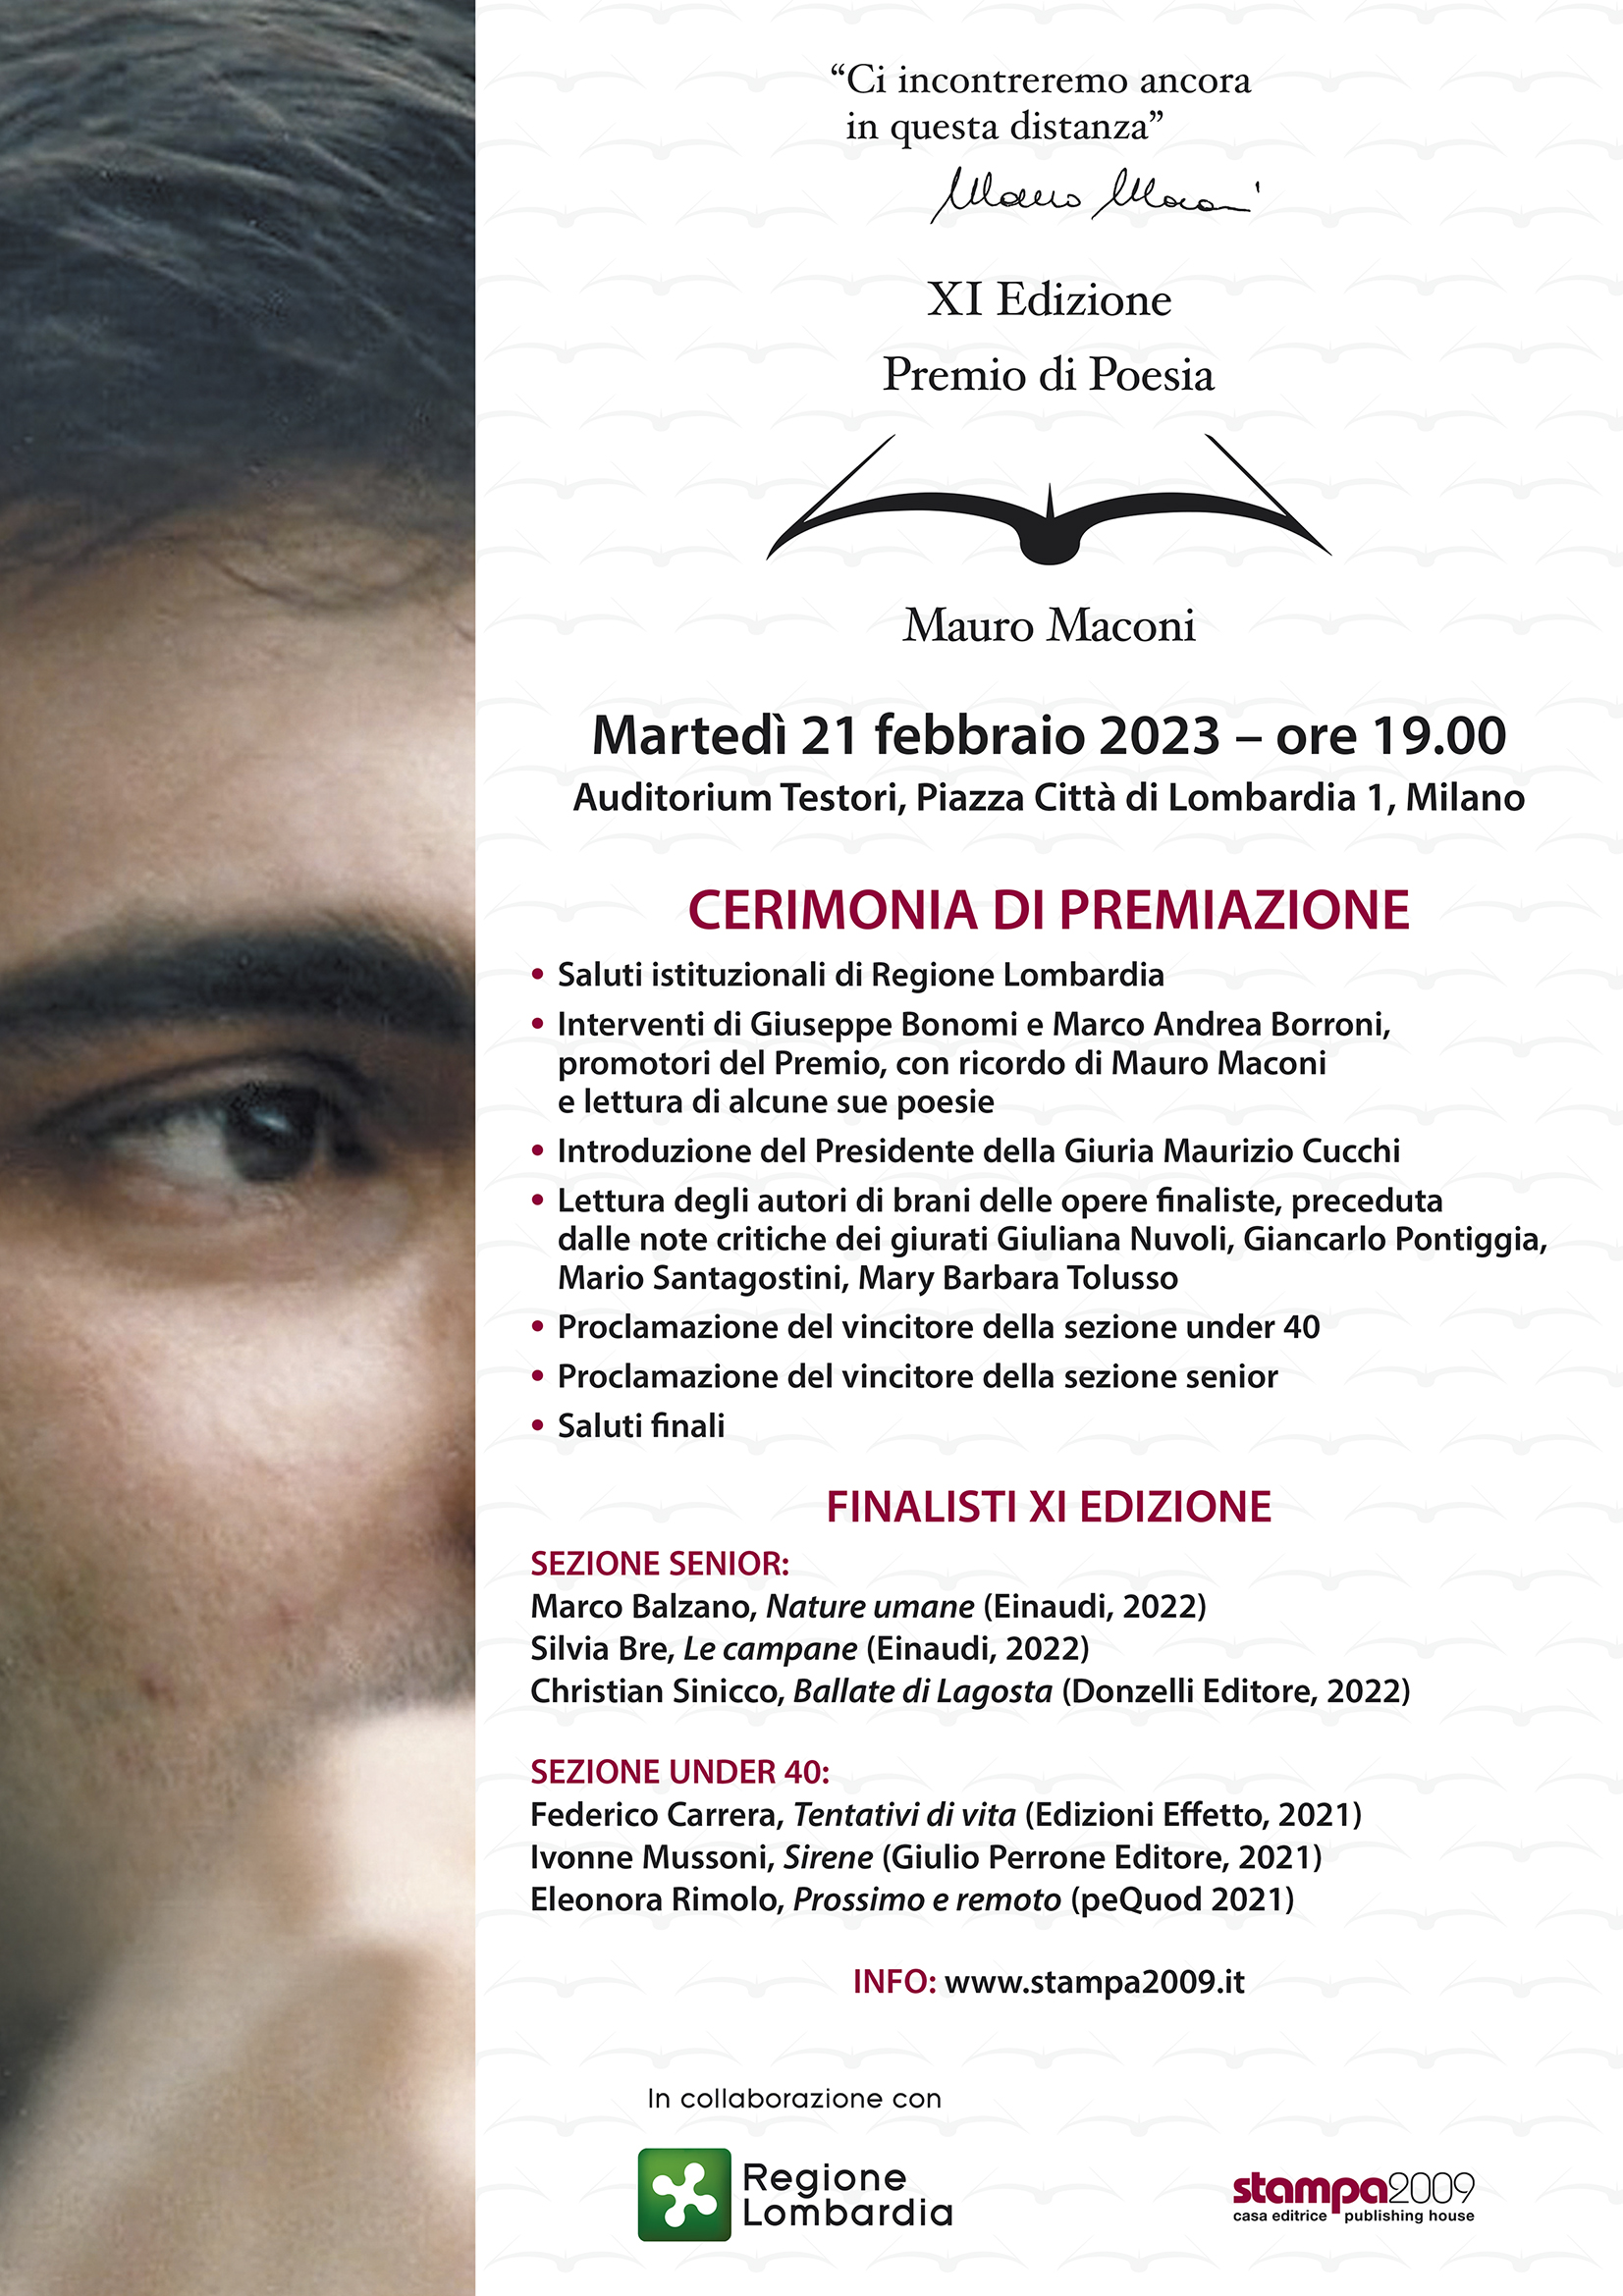 Premio di Poesia Mauro Maconi, Auditorium Testori, Piazza di Lombardia, 1, Milano, 21 febbraio 2023